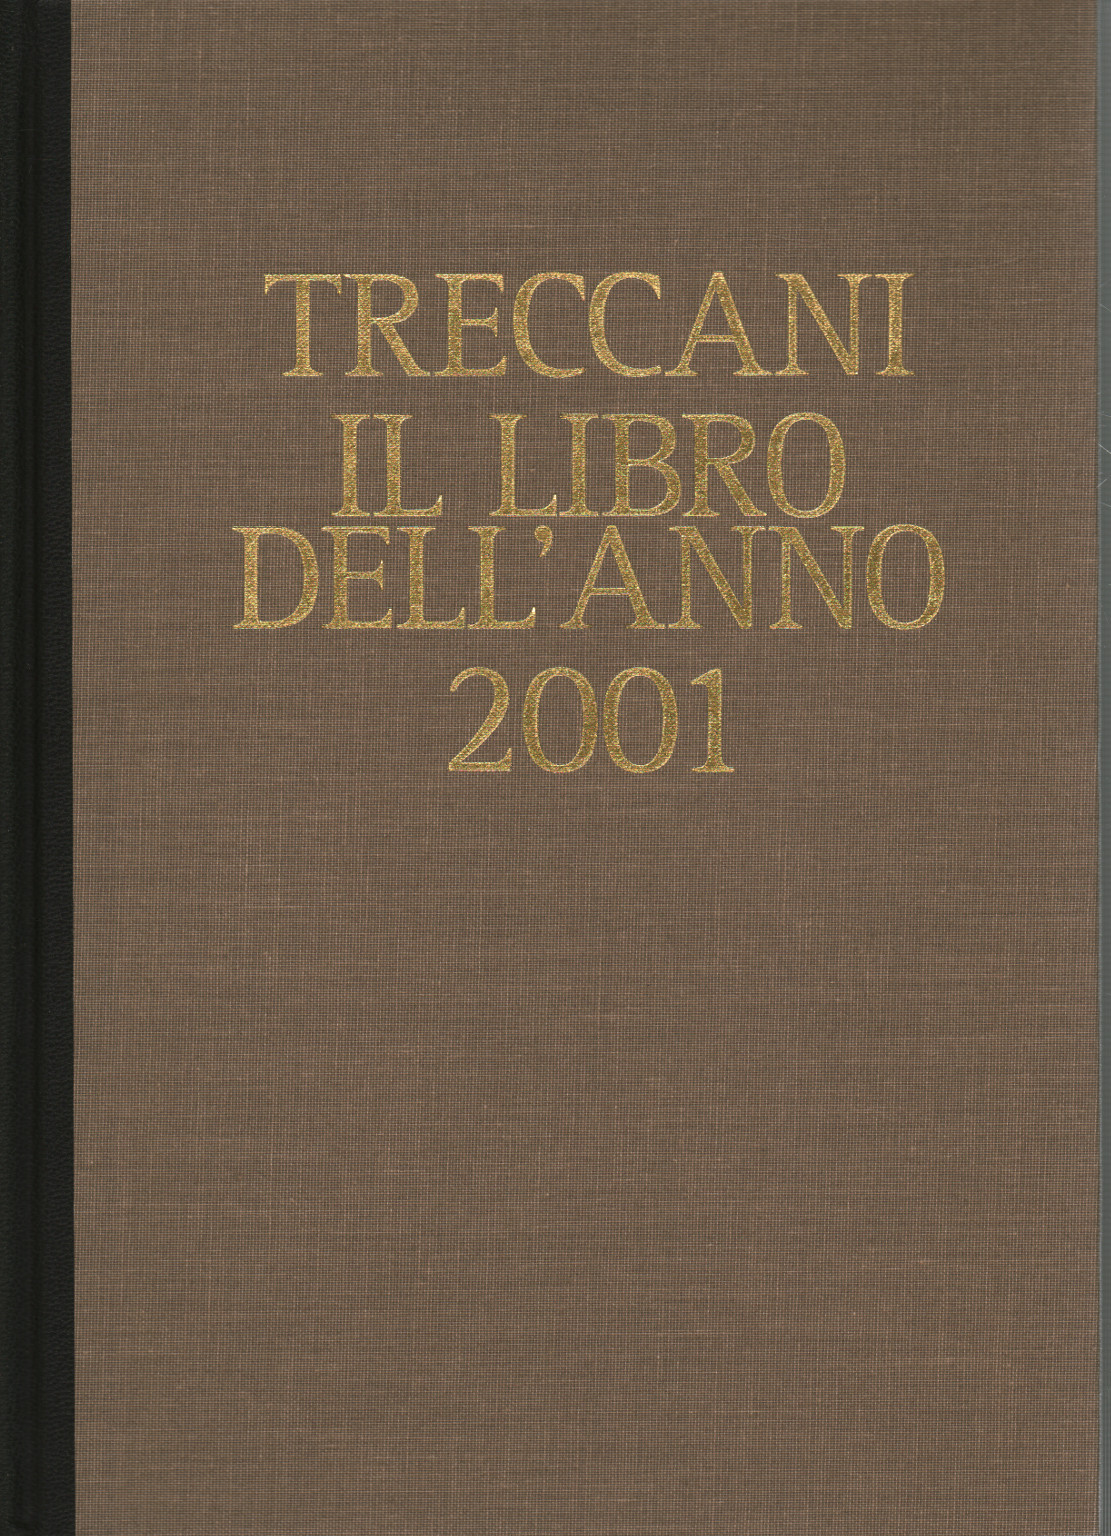 Treccani. Le livre de l'année 2001, s.un.